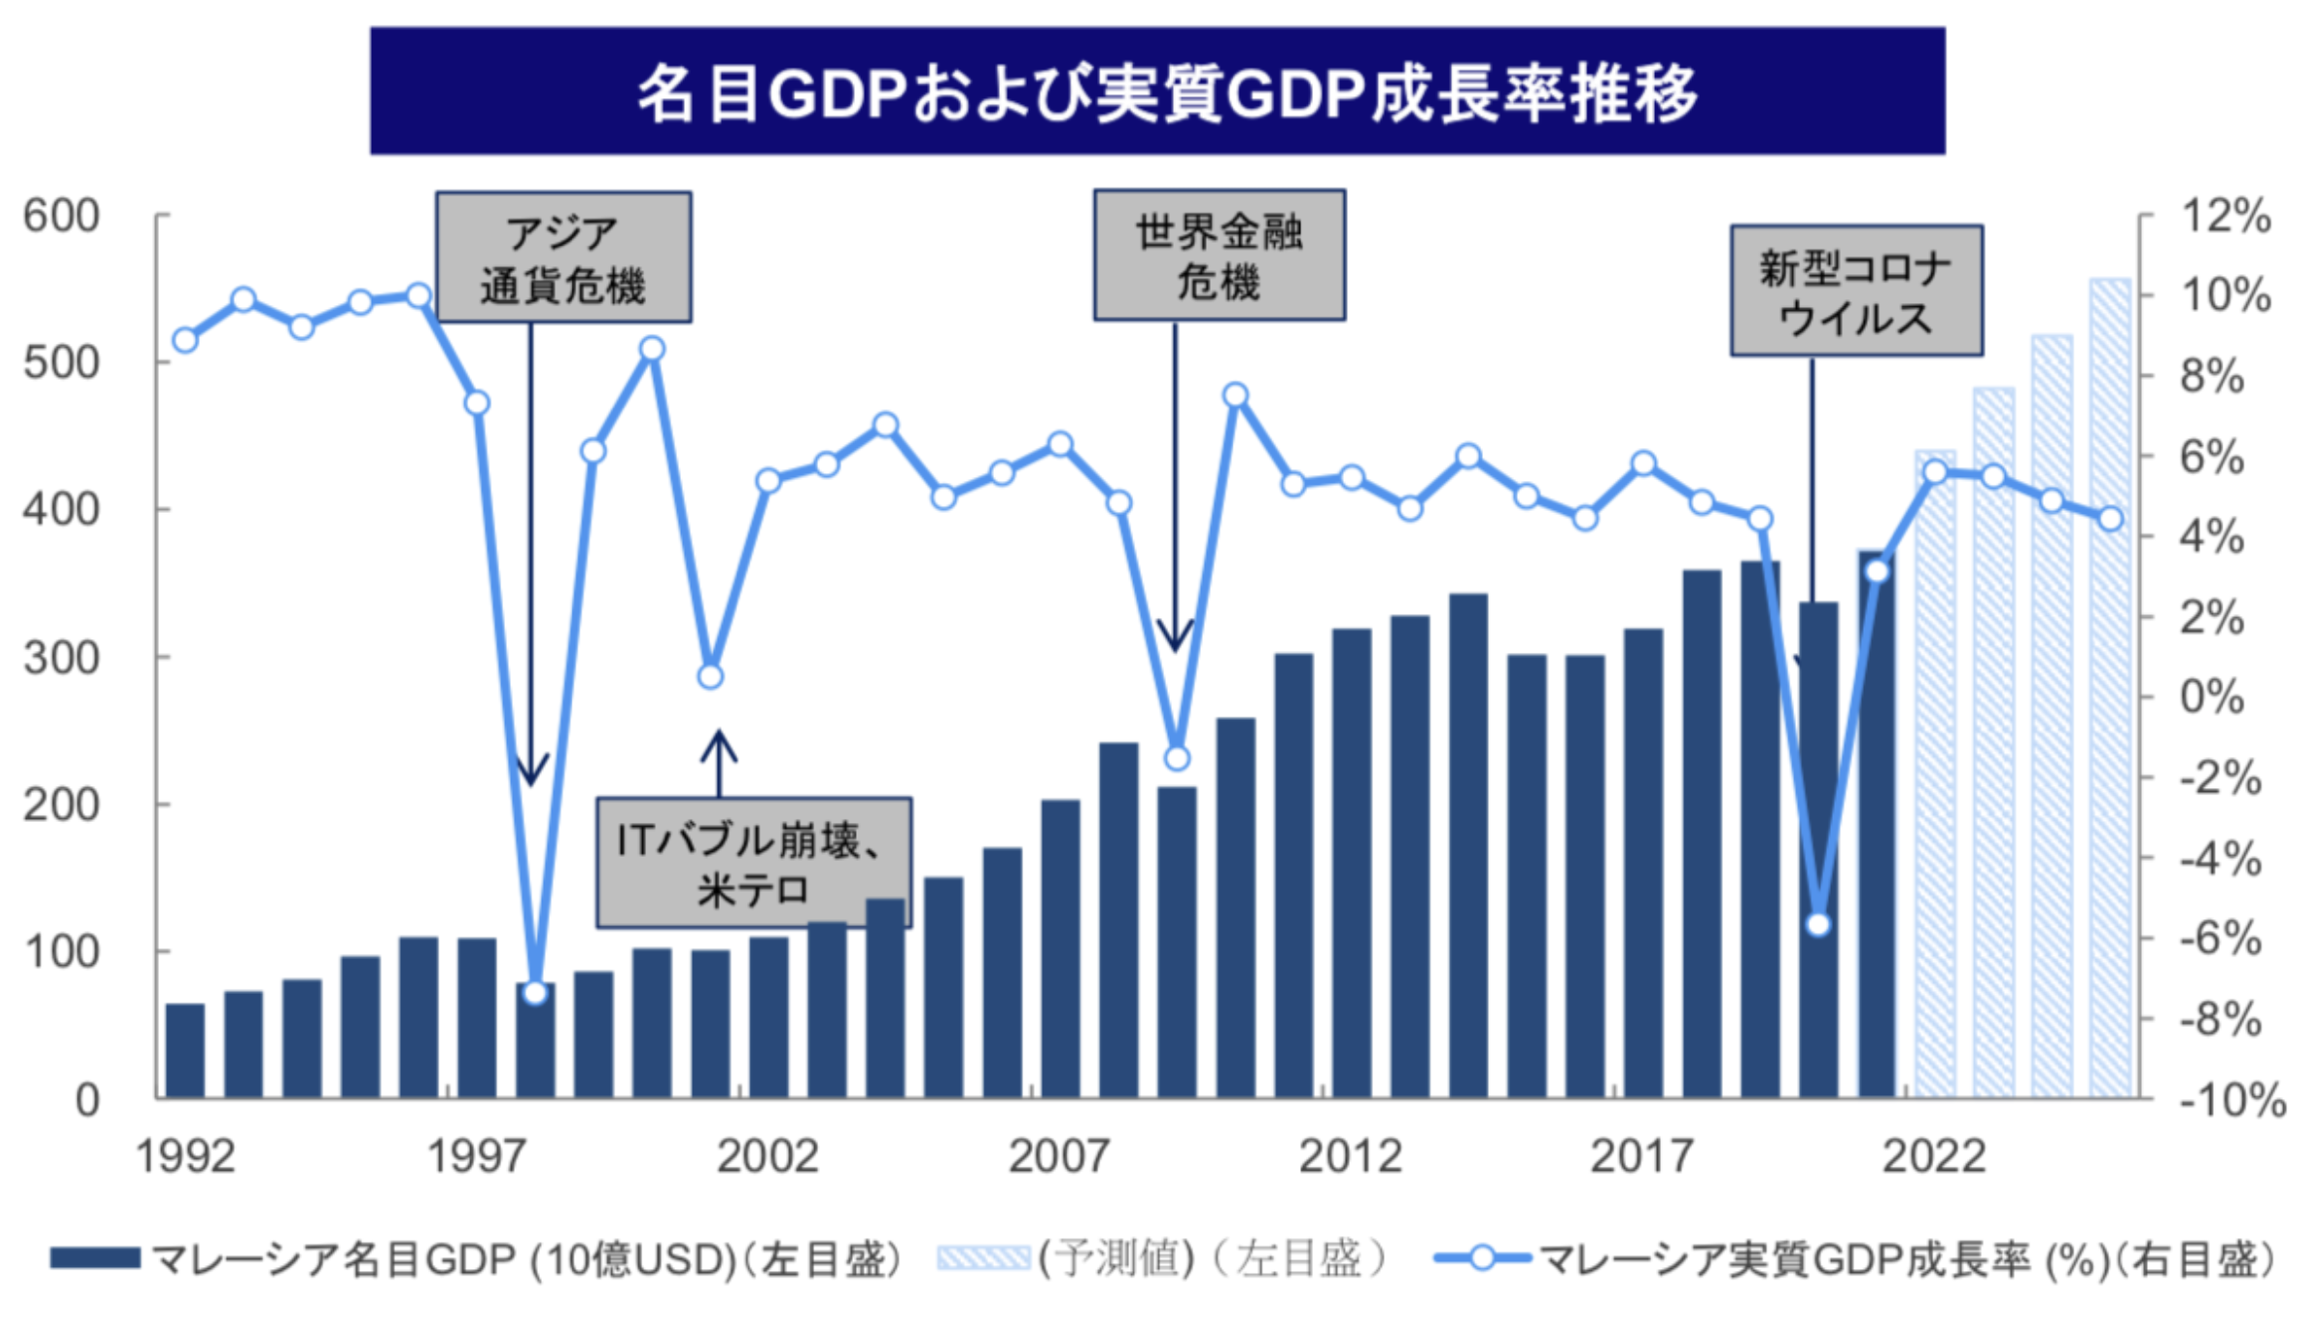 マレーシアのGDPとGDP成長率の推移